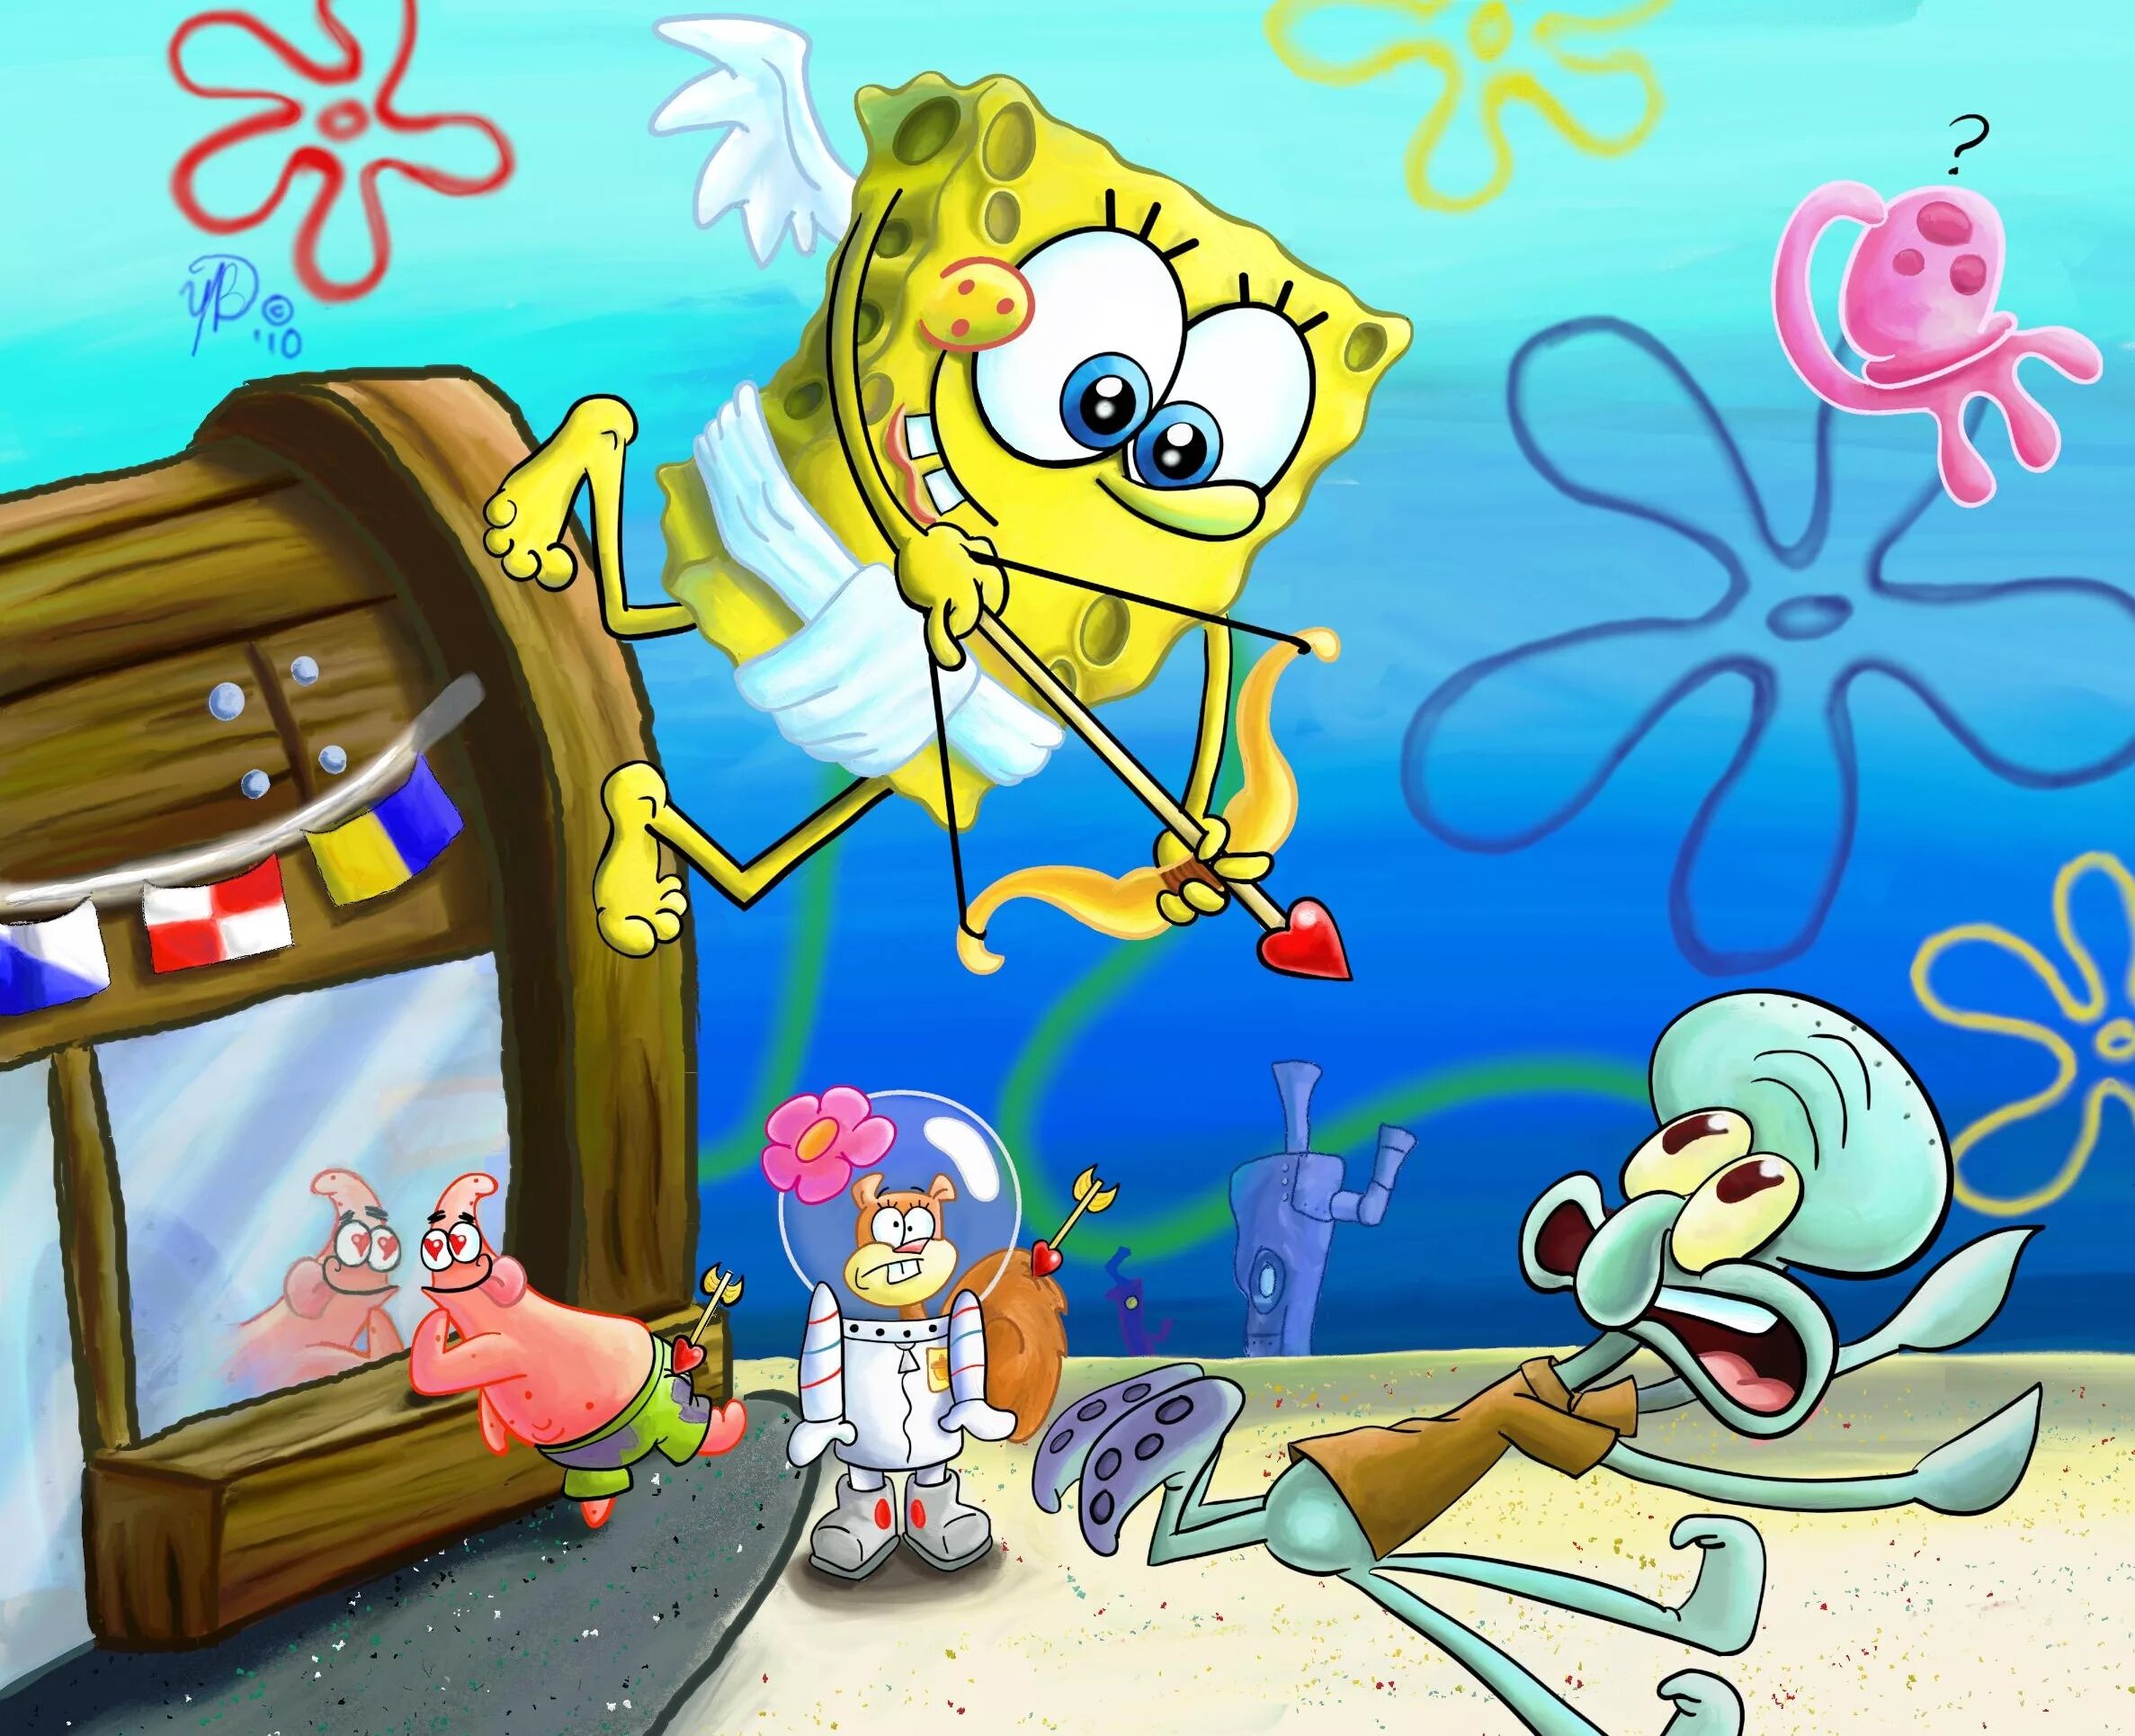 Spongebob big. Спанч Боб Спанч Боб. Губка Боб Сквидвард и Сэнди. Спанч Боб и Патрик и Сквидвард и Сэнди. Губка Патрик Сэнди и Сквидвард.